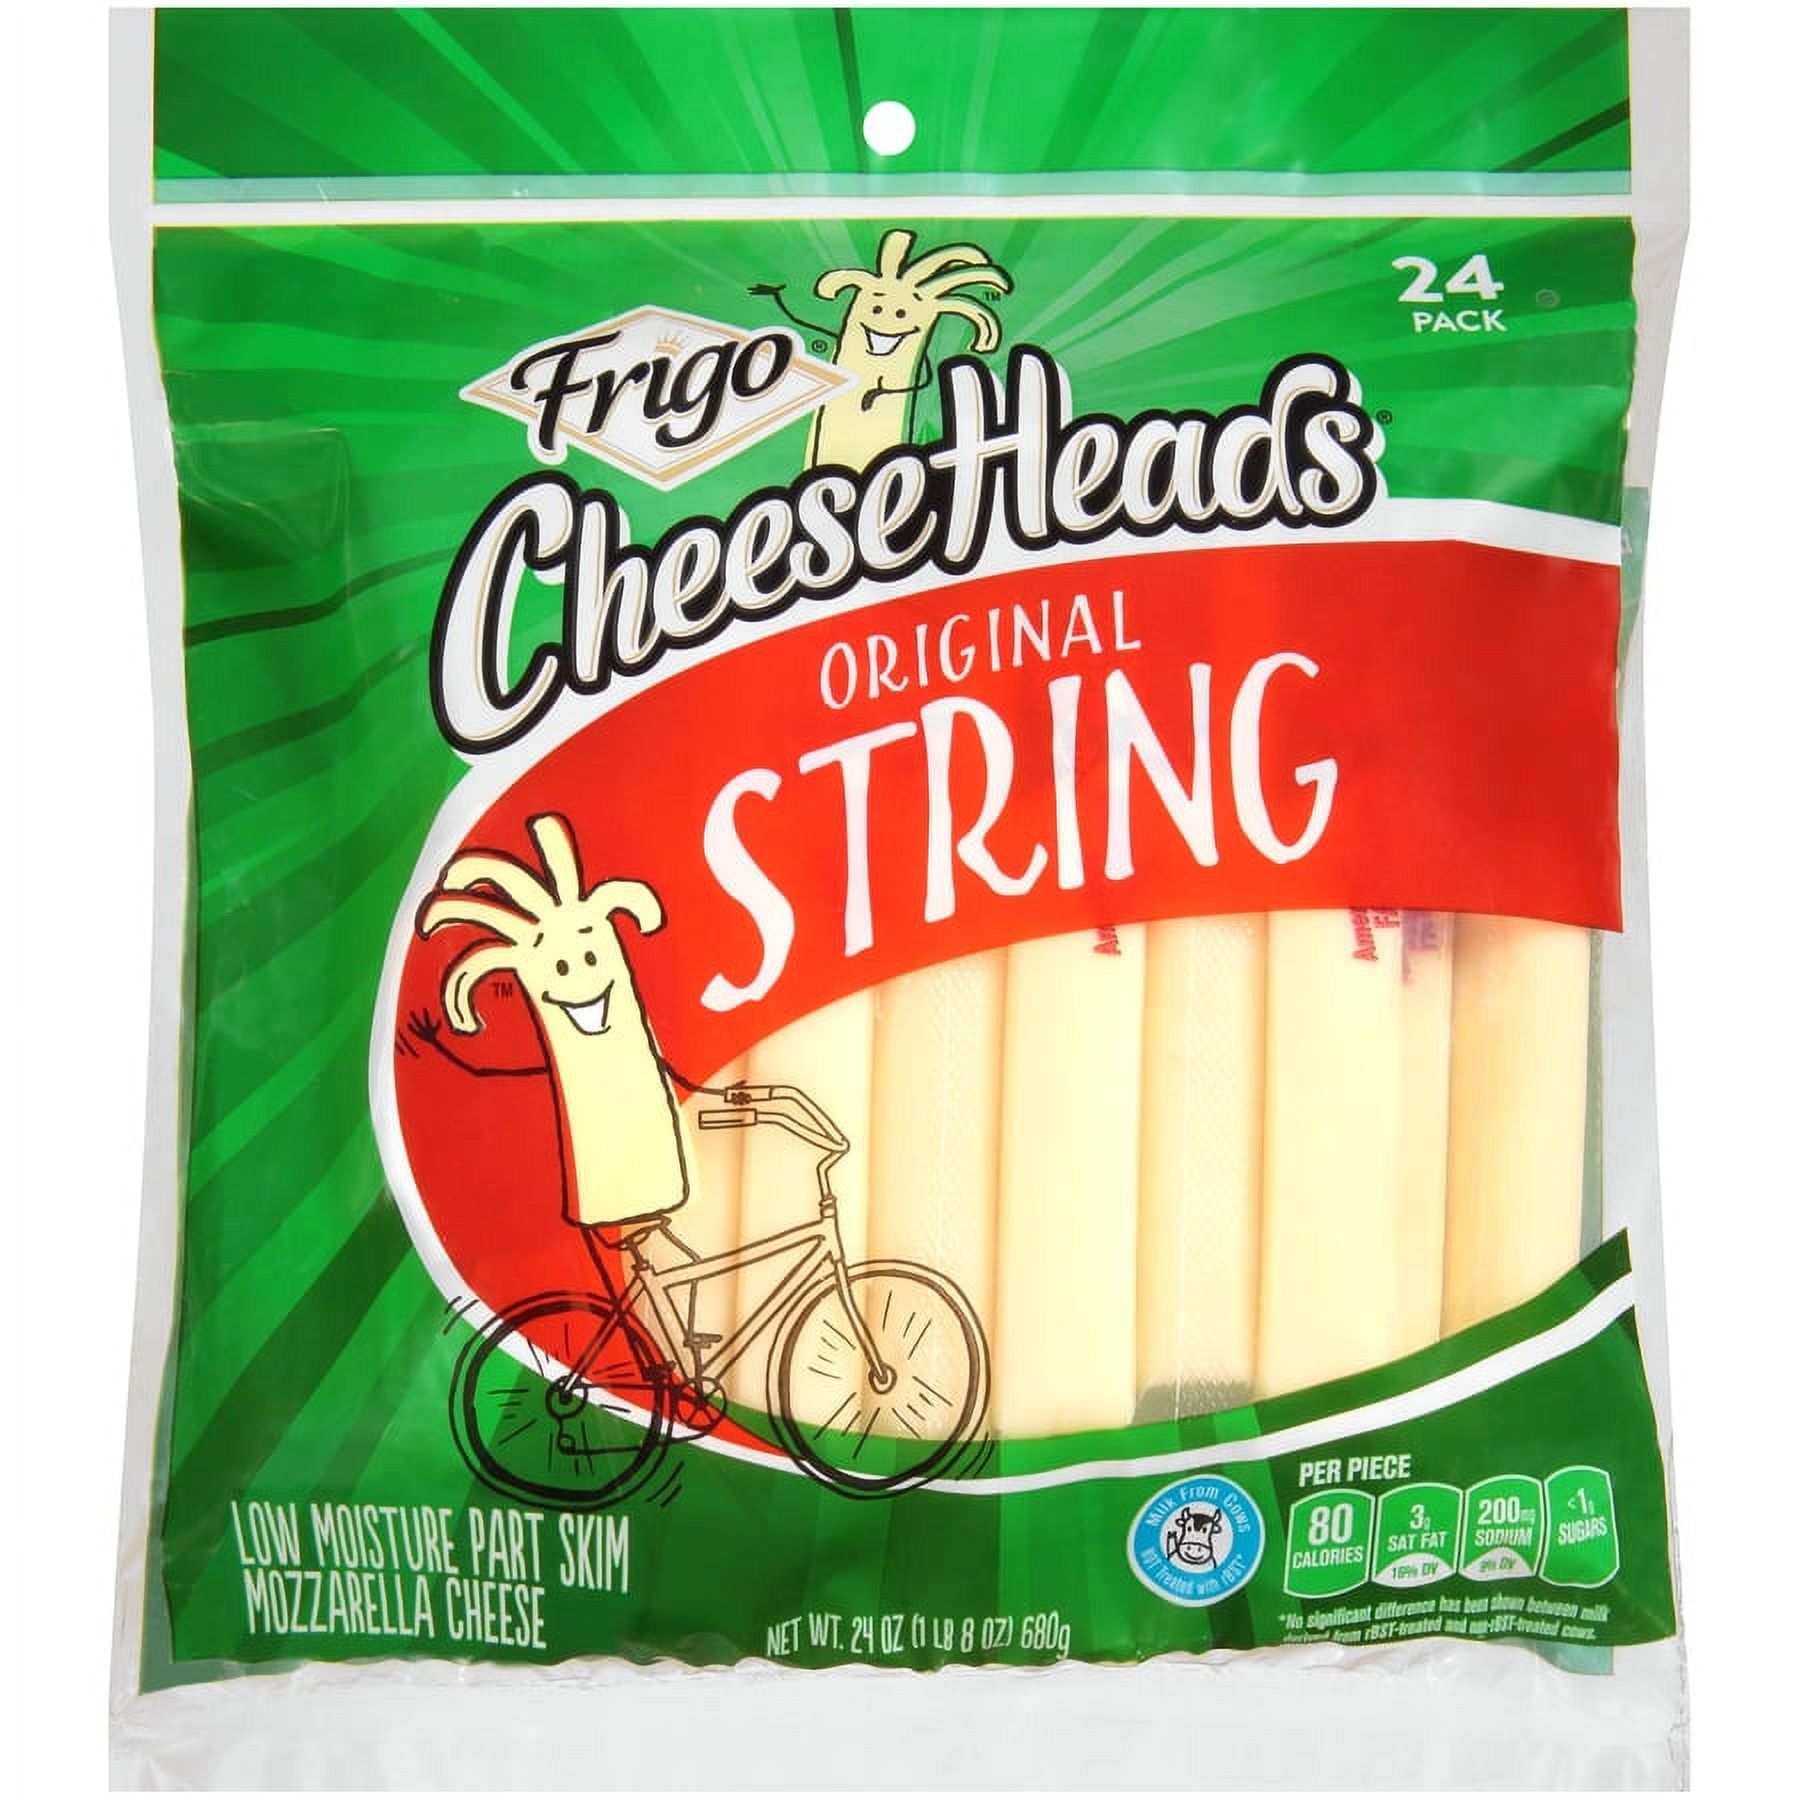 Frigo Cheese Heads Original Mozzarella String Cheese, Cheese Snacks, 24 oz, 24 Count - image 1 of 6